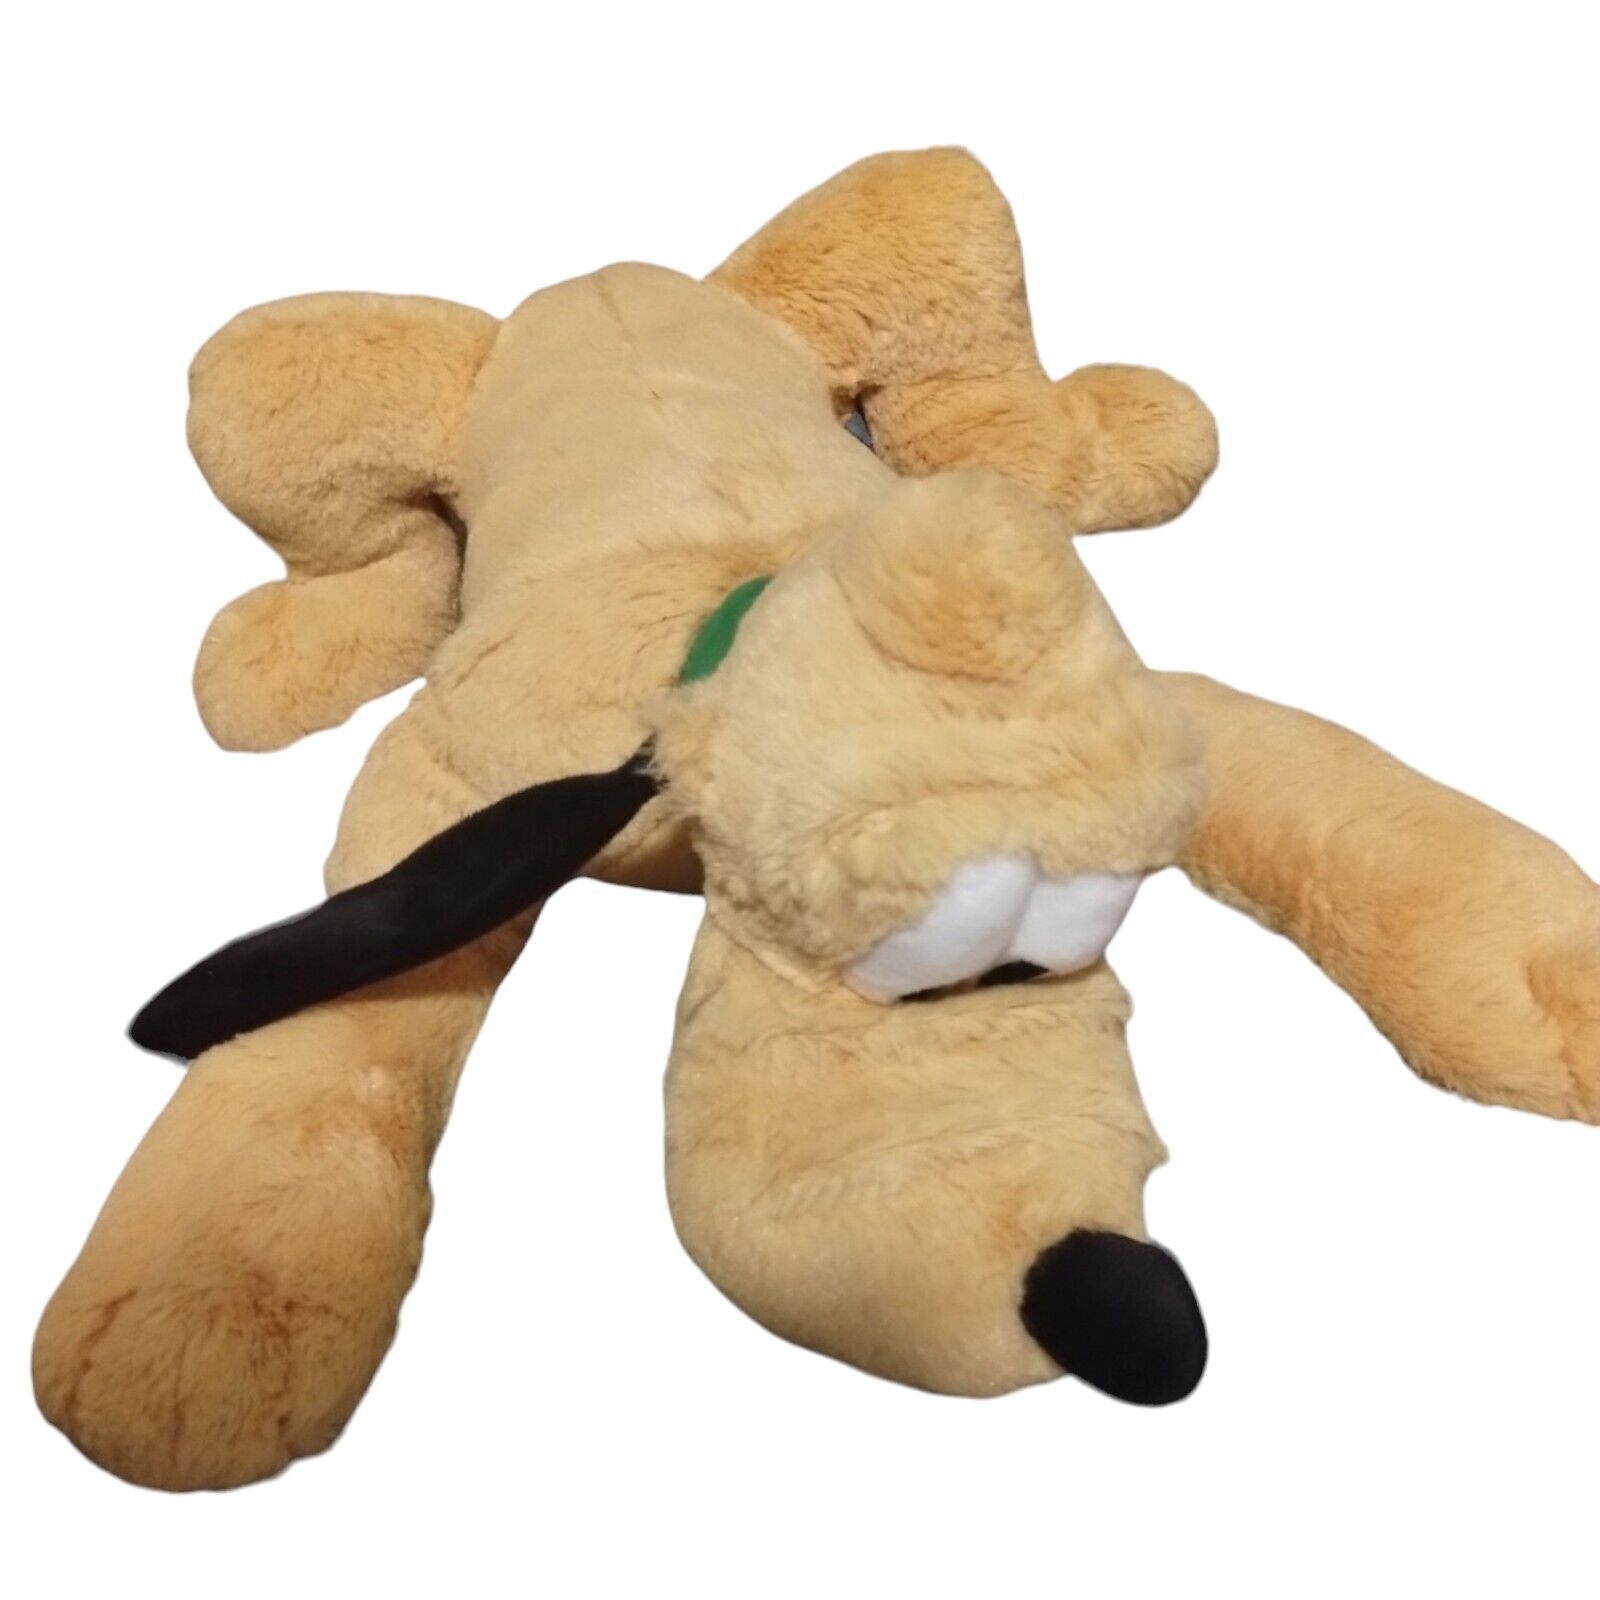 Disney Pluto Plush Disney Store 16” Soft Floppy Stuffed Animal Dog Gift